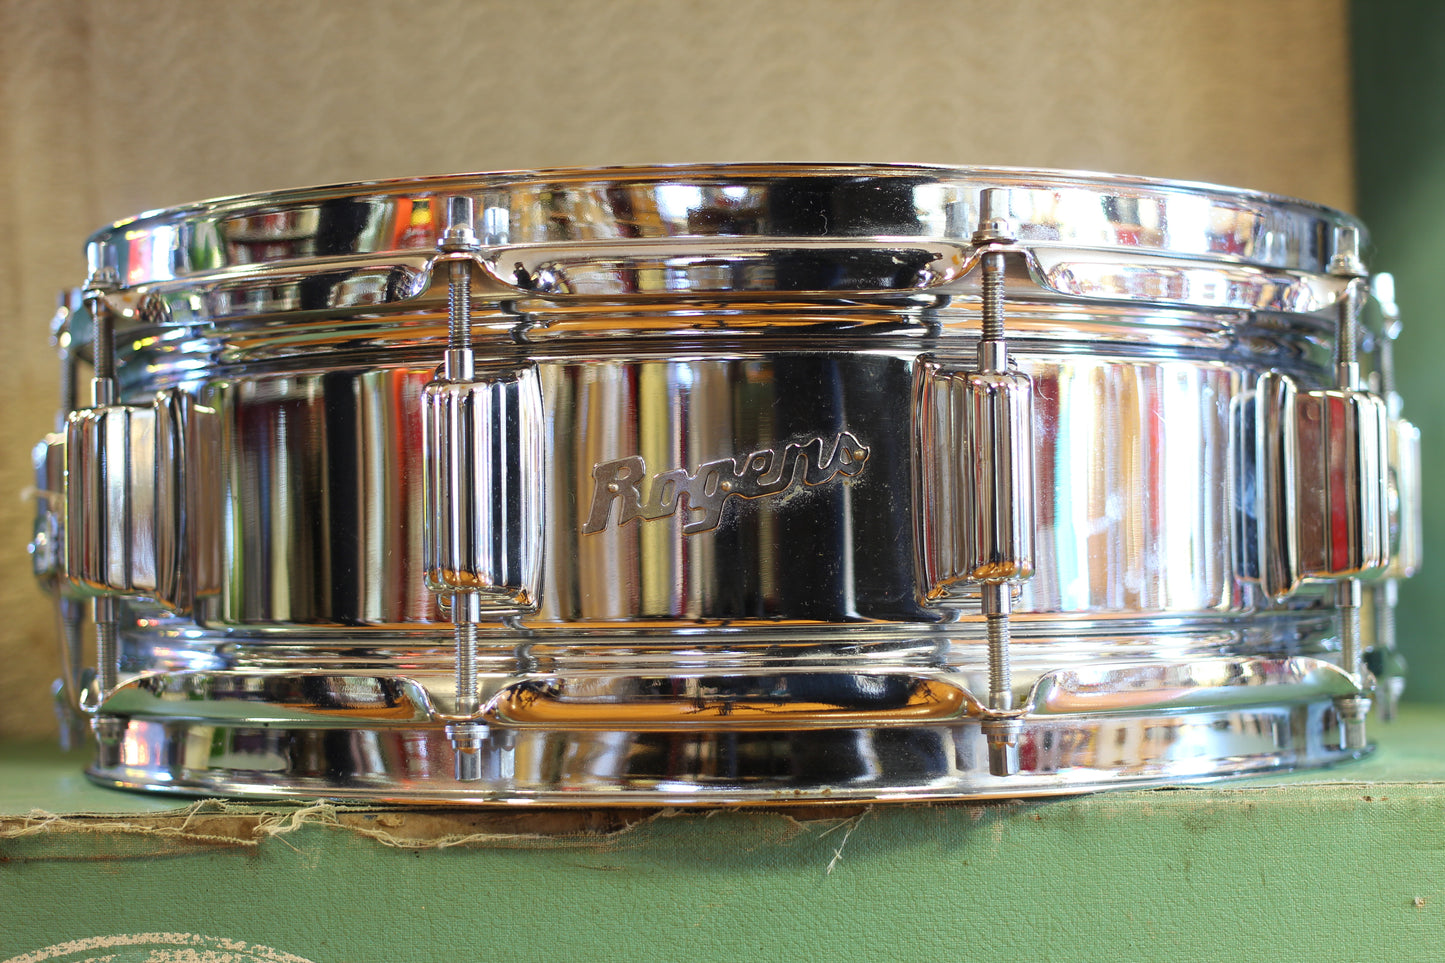 1970's Rogers 5"x14" SuperTen Snare Drum Serial #1377